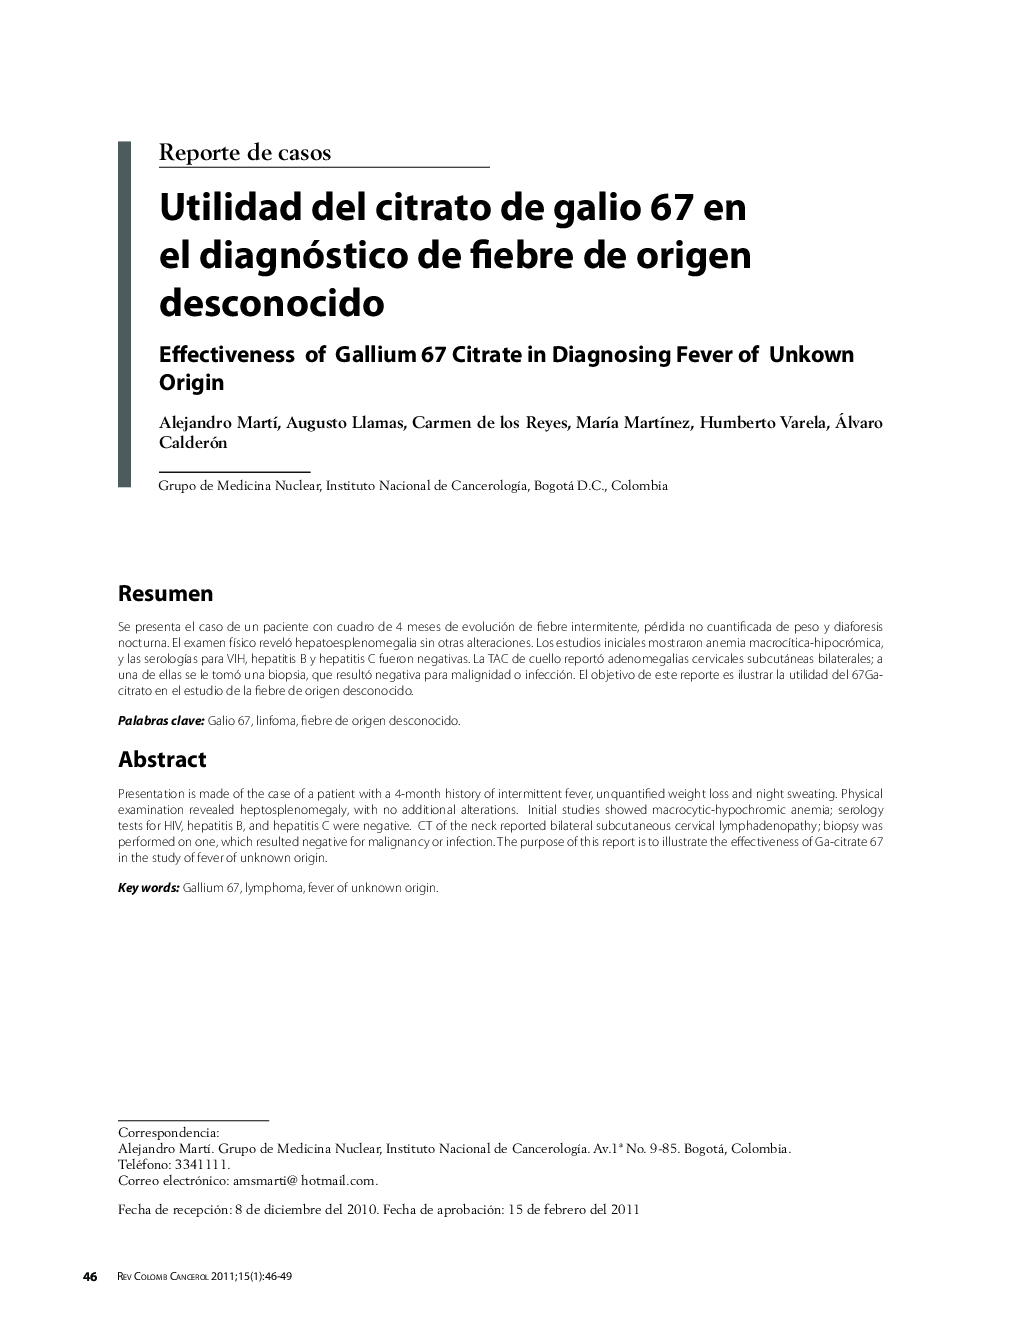 Utilidad del citrato de galio 67 en el diagnóstico de fiebre de origen desconocido